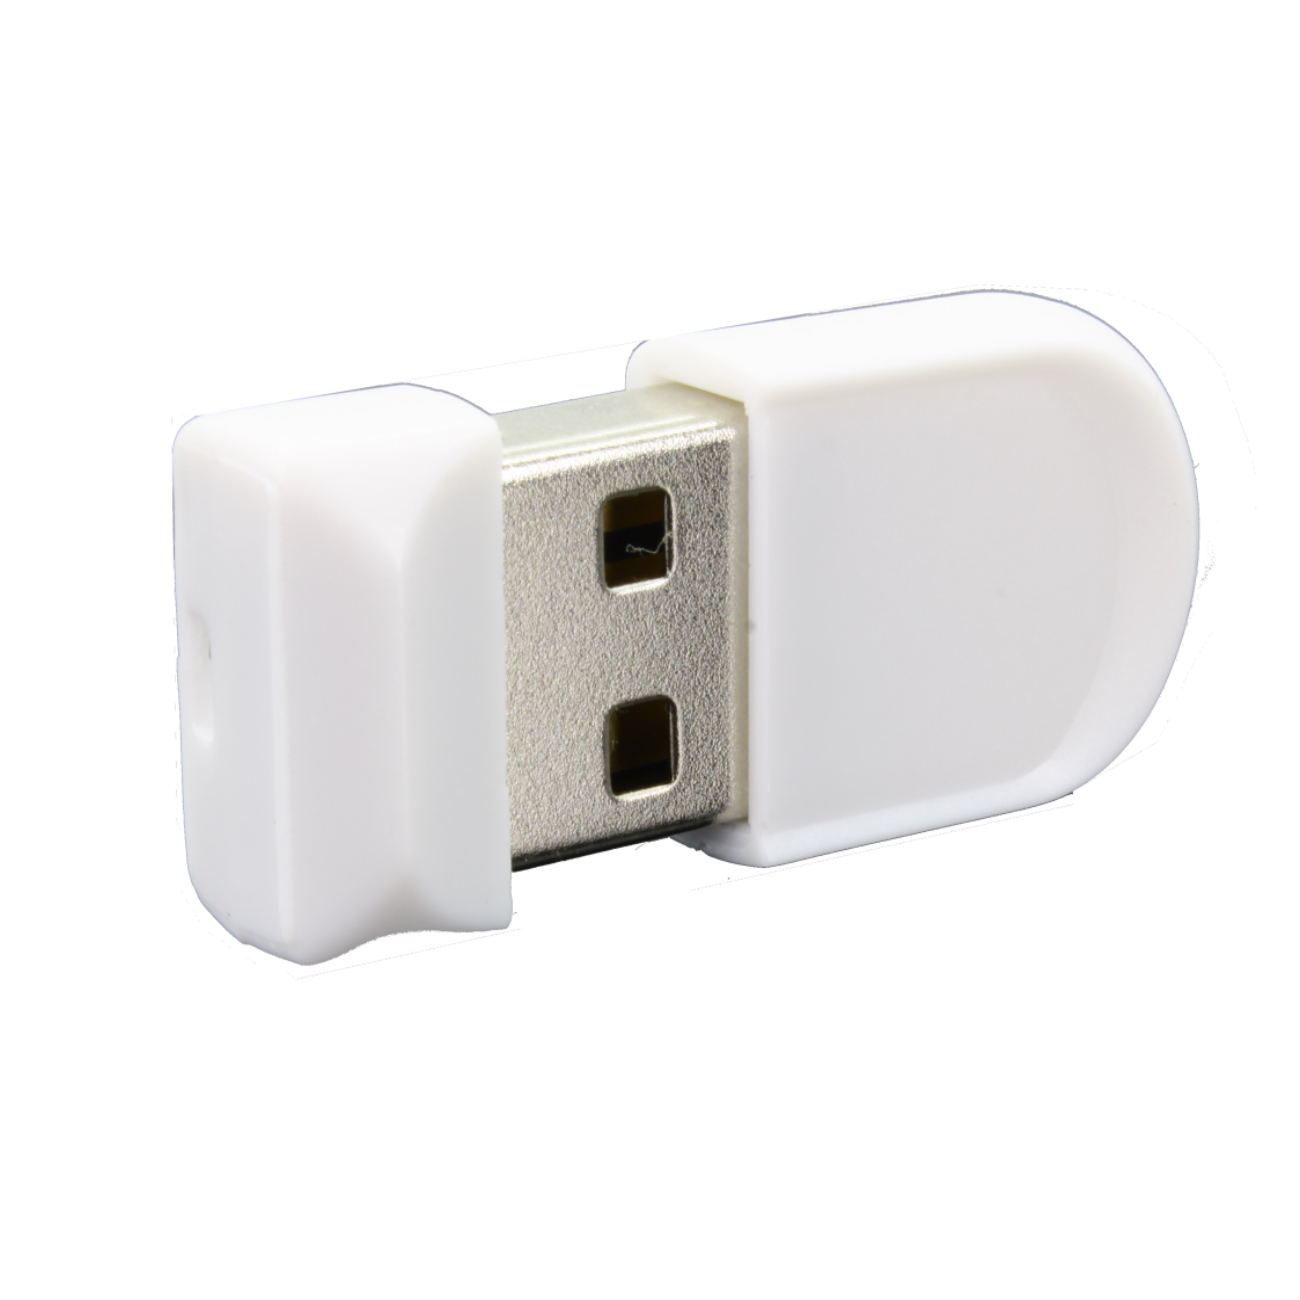 ®ULTRA GB) USB-Stick Mini K1 GERMANY USB (Weiß, 2